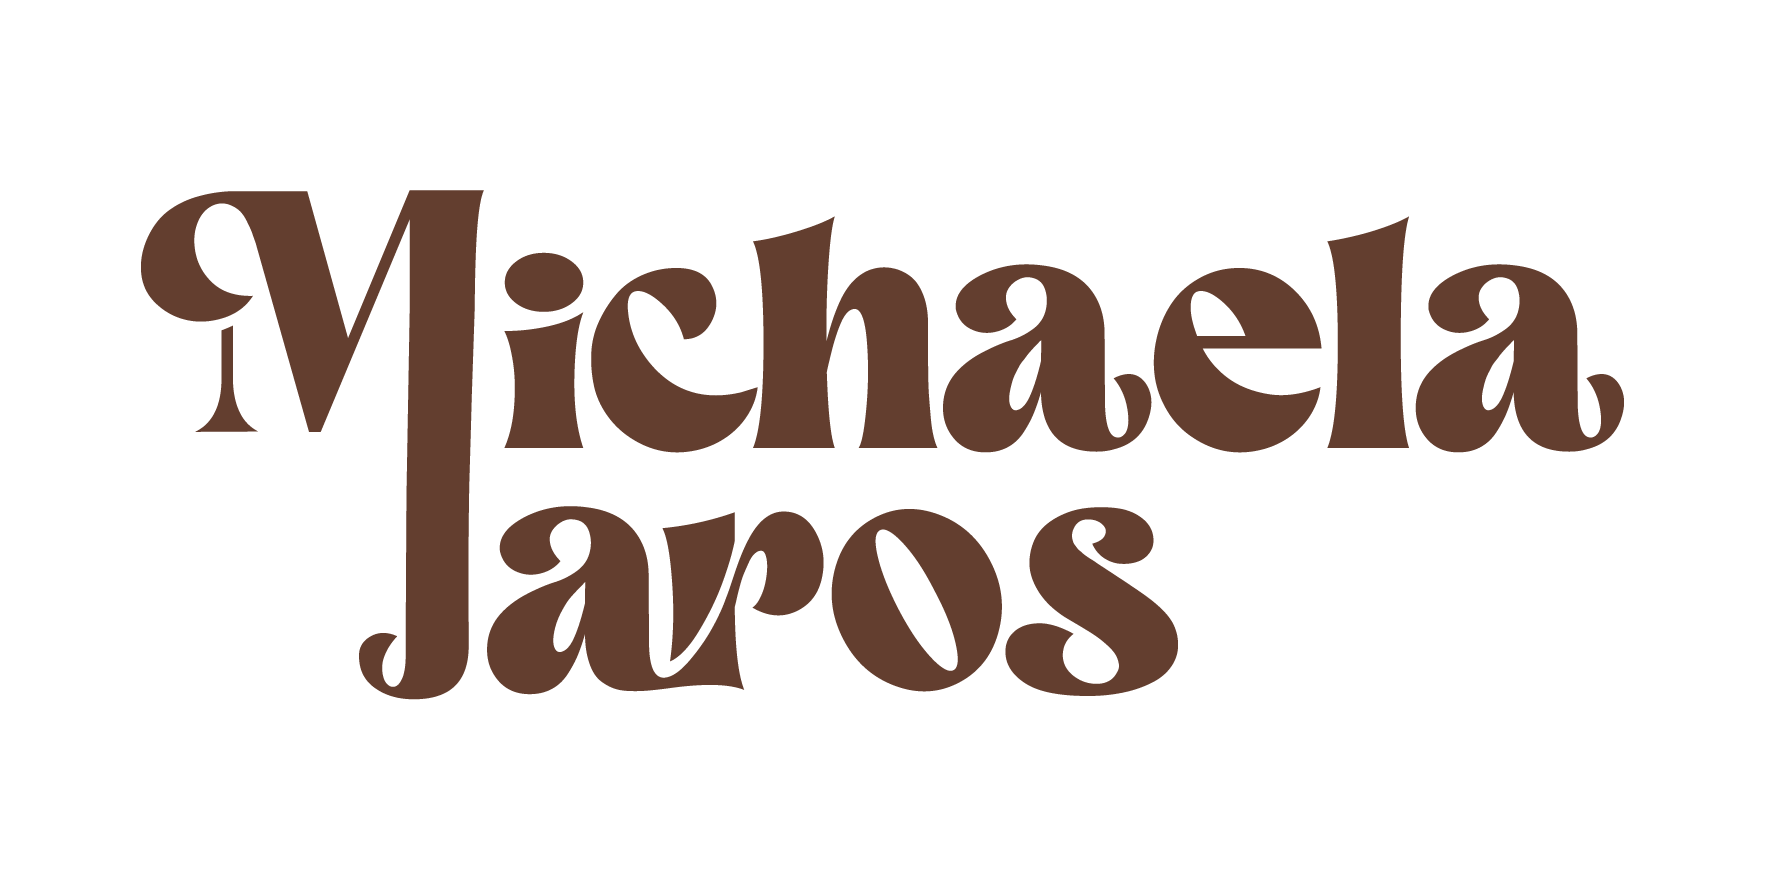 Lovestories by Michaela Jaros